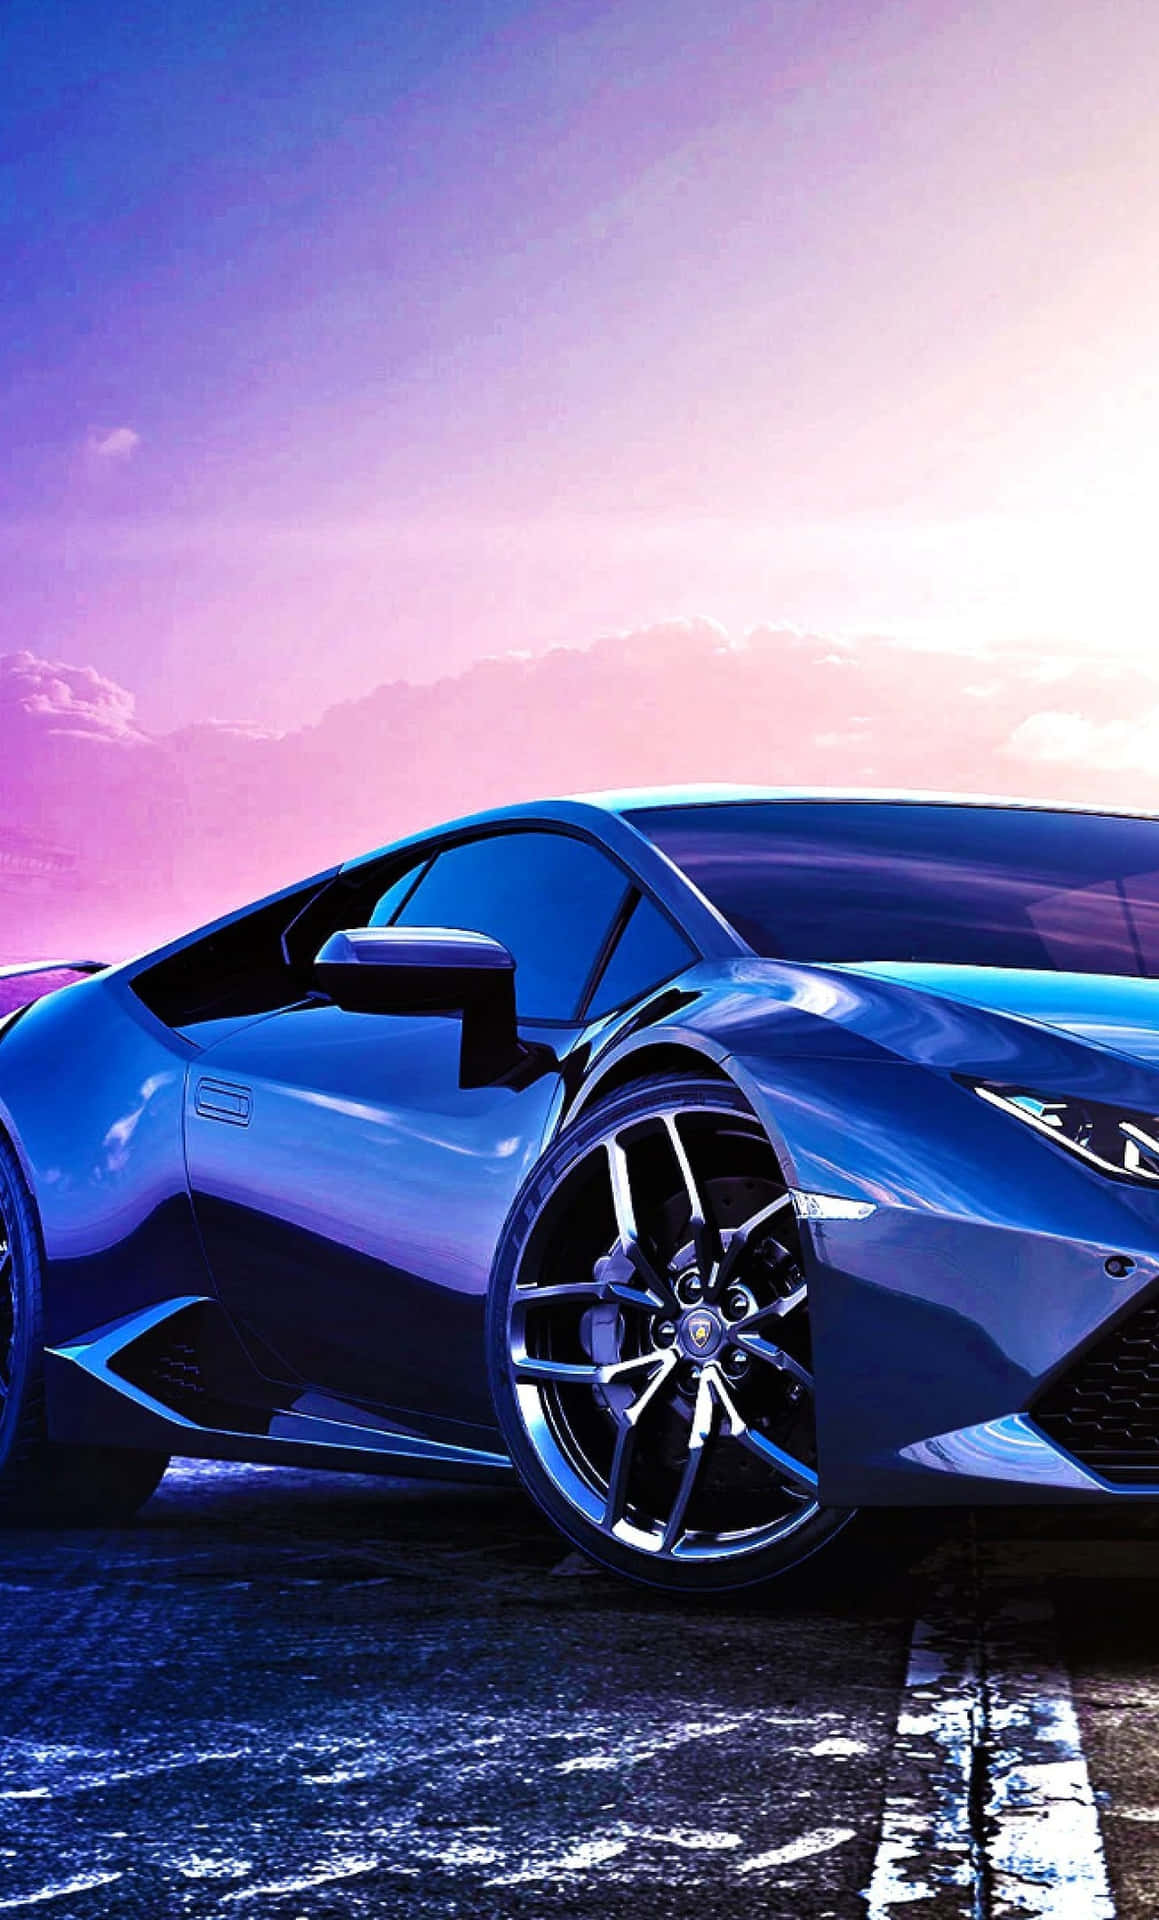 Zoome ind på den smukke blå Lamborghini Wallpaper